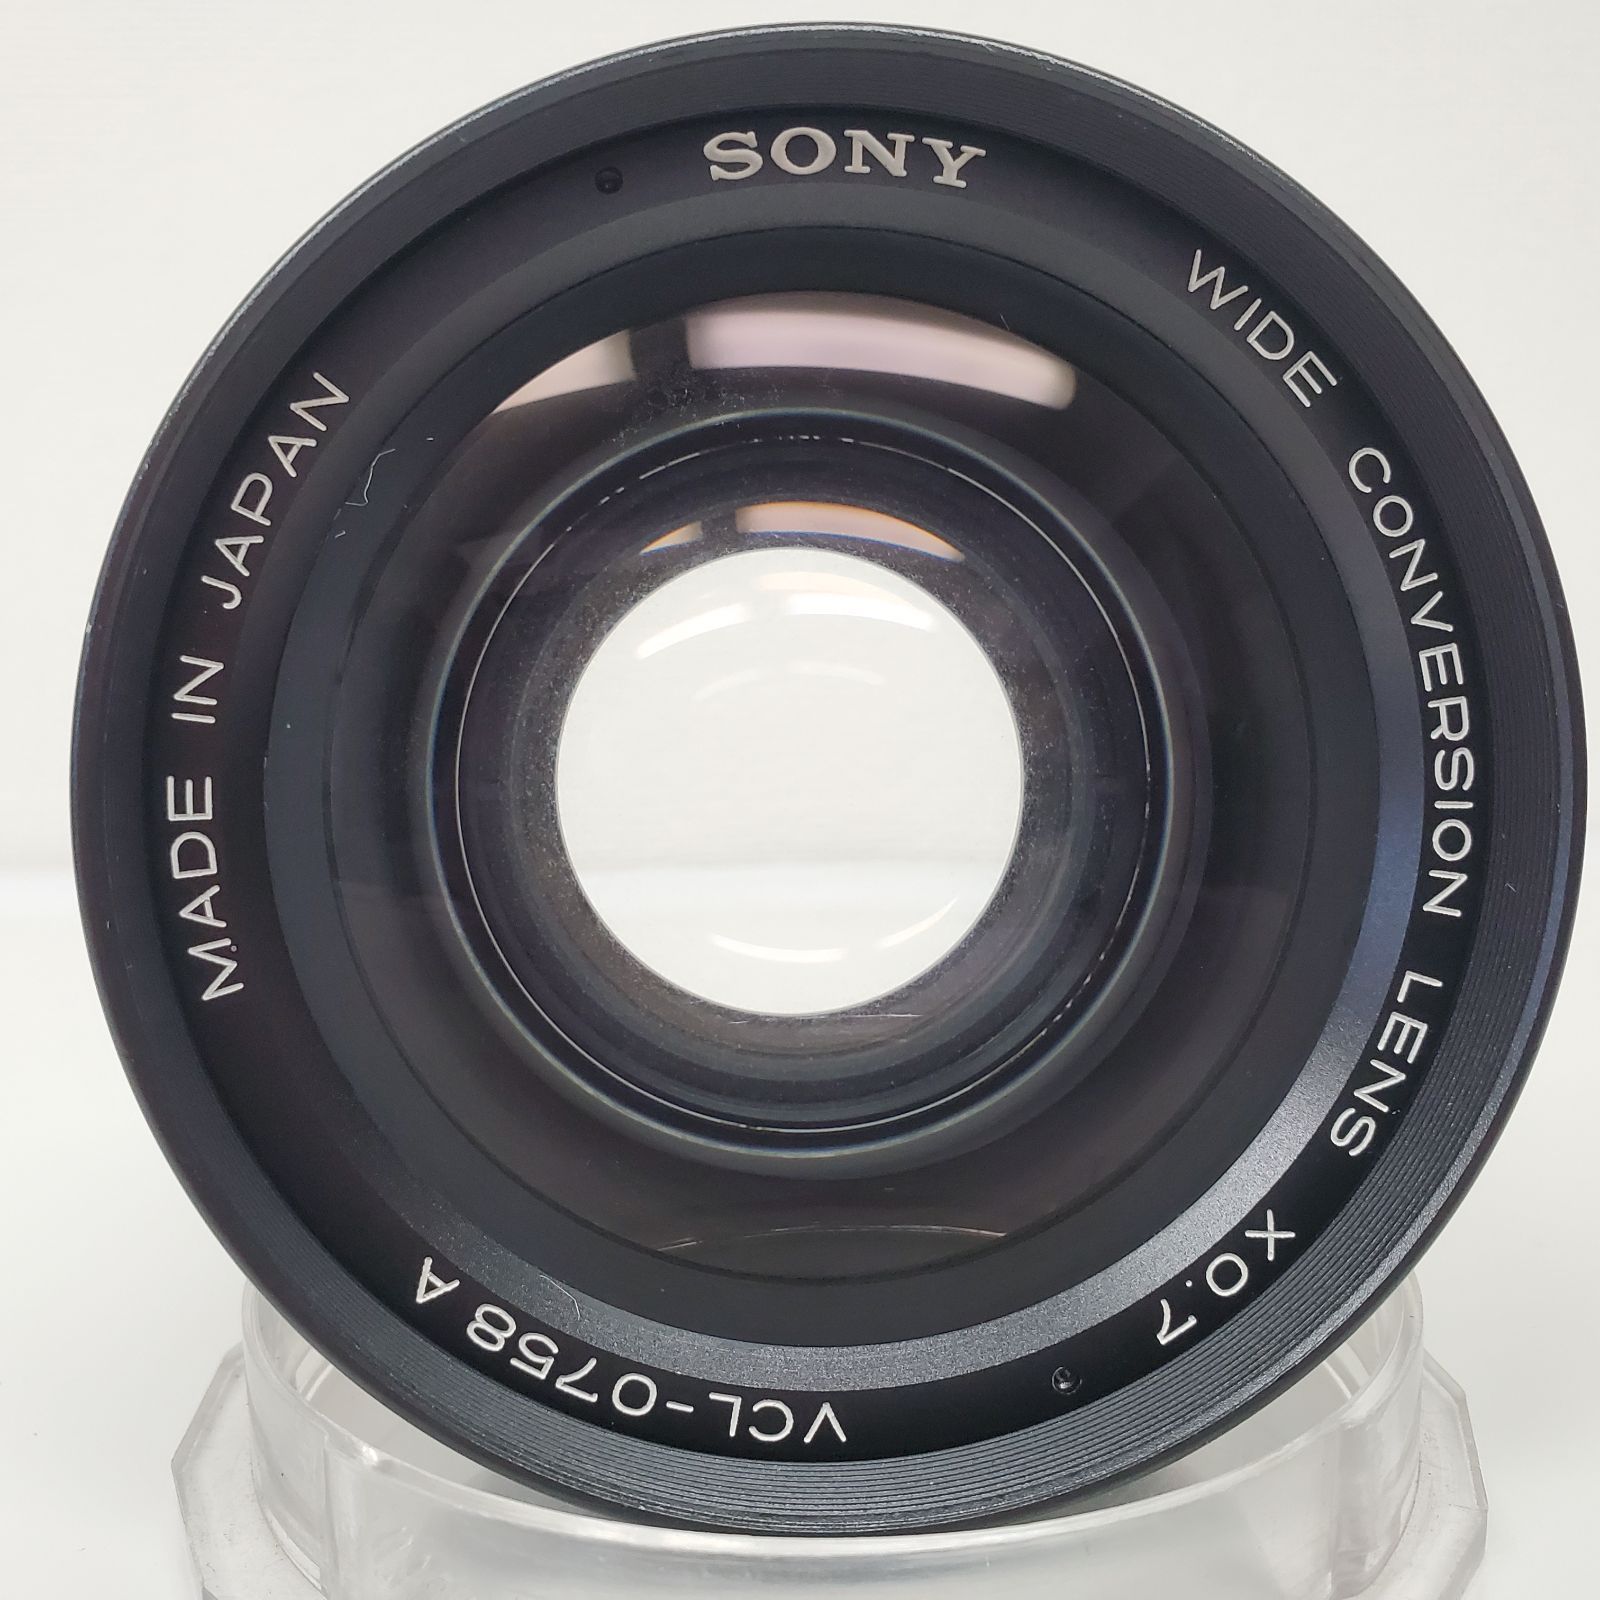 ソニー SONY ワイドコンバージョンレンズ WIDE CONVERSION LENS x0.7 VCL-0758A ワイコン レンズ 0.7倍  径52-58mm ケース付き